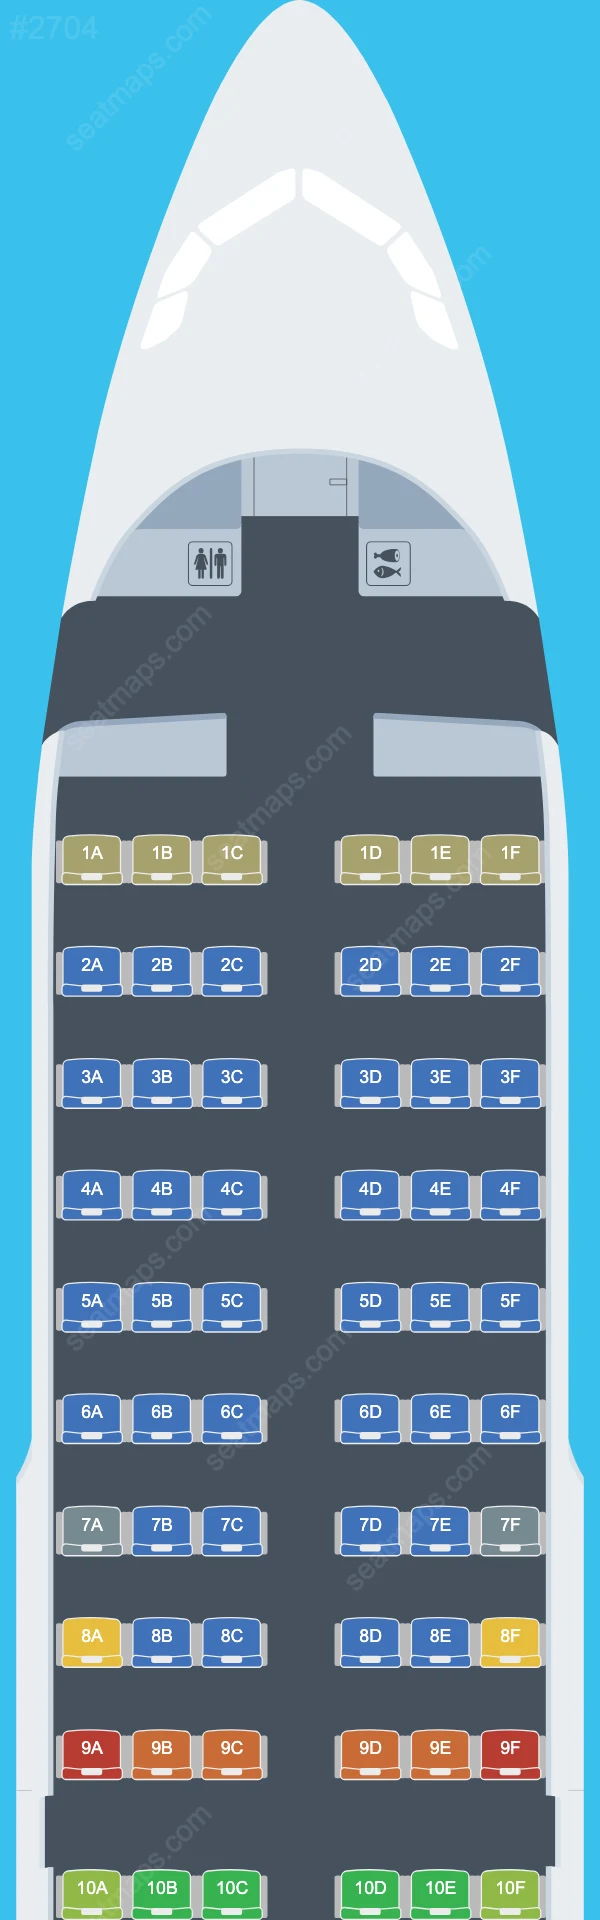 Схема салонов LATAM Airlines в самолетах Airbus A319 A319-100